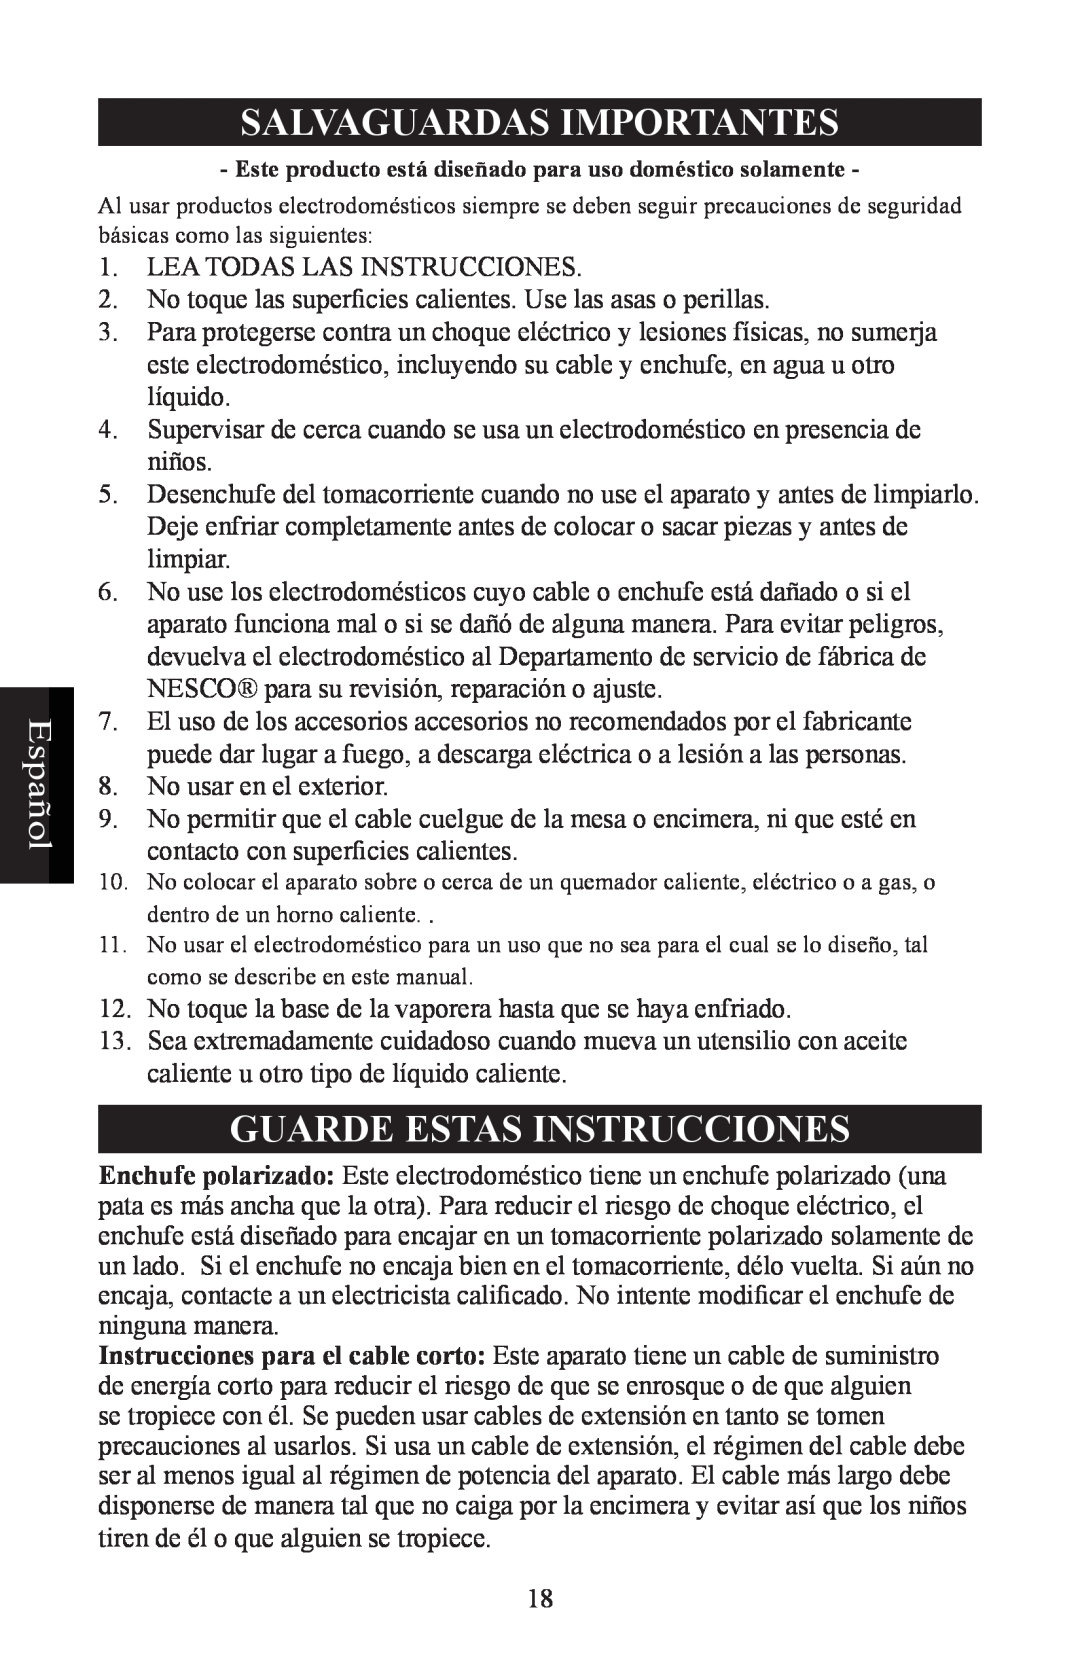 Nesco ST-24 manual Español, Salvaguardas Importantes, Guarde Estas Instrucciones 